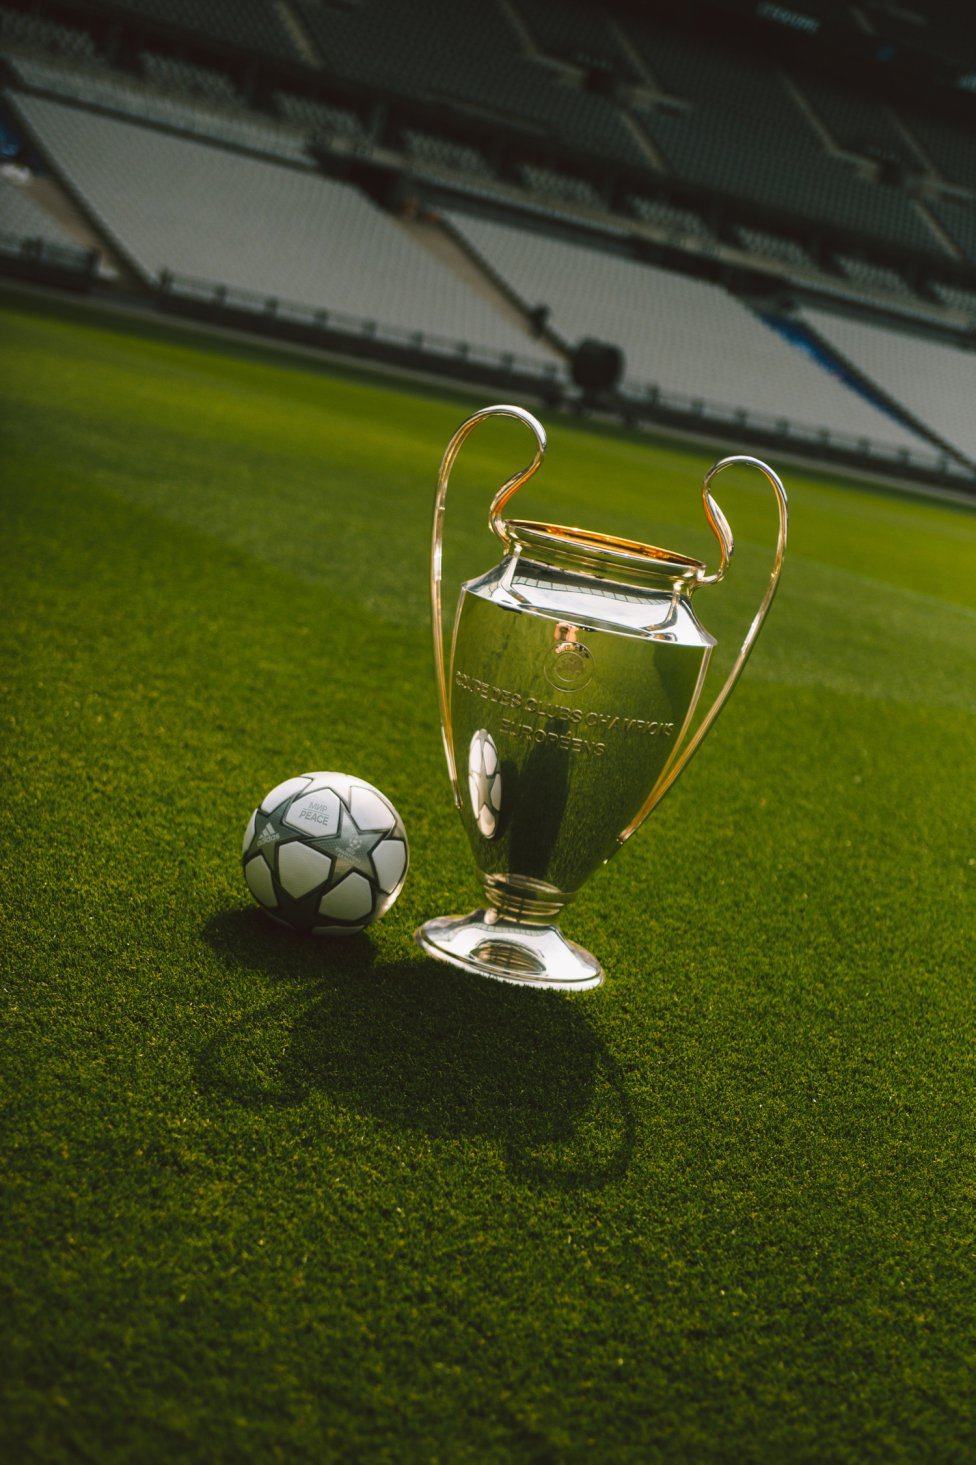 Adidas ha dado a conocer el balón para la final de la Champions 2022 en París entre el Real Madrid y el Liverpool